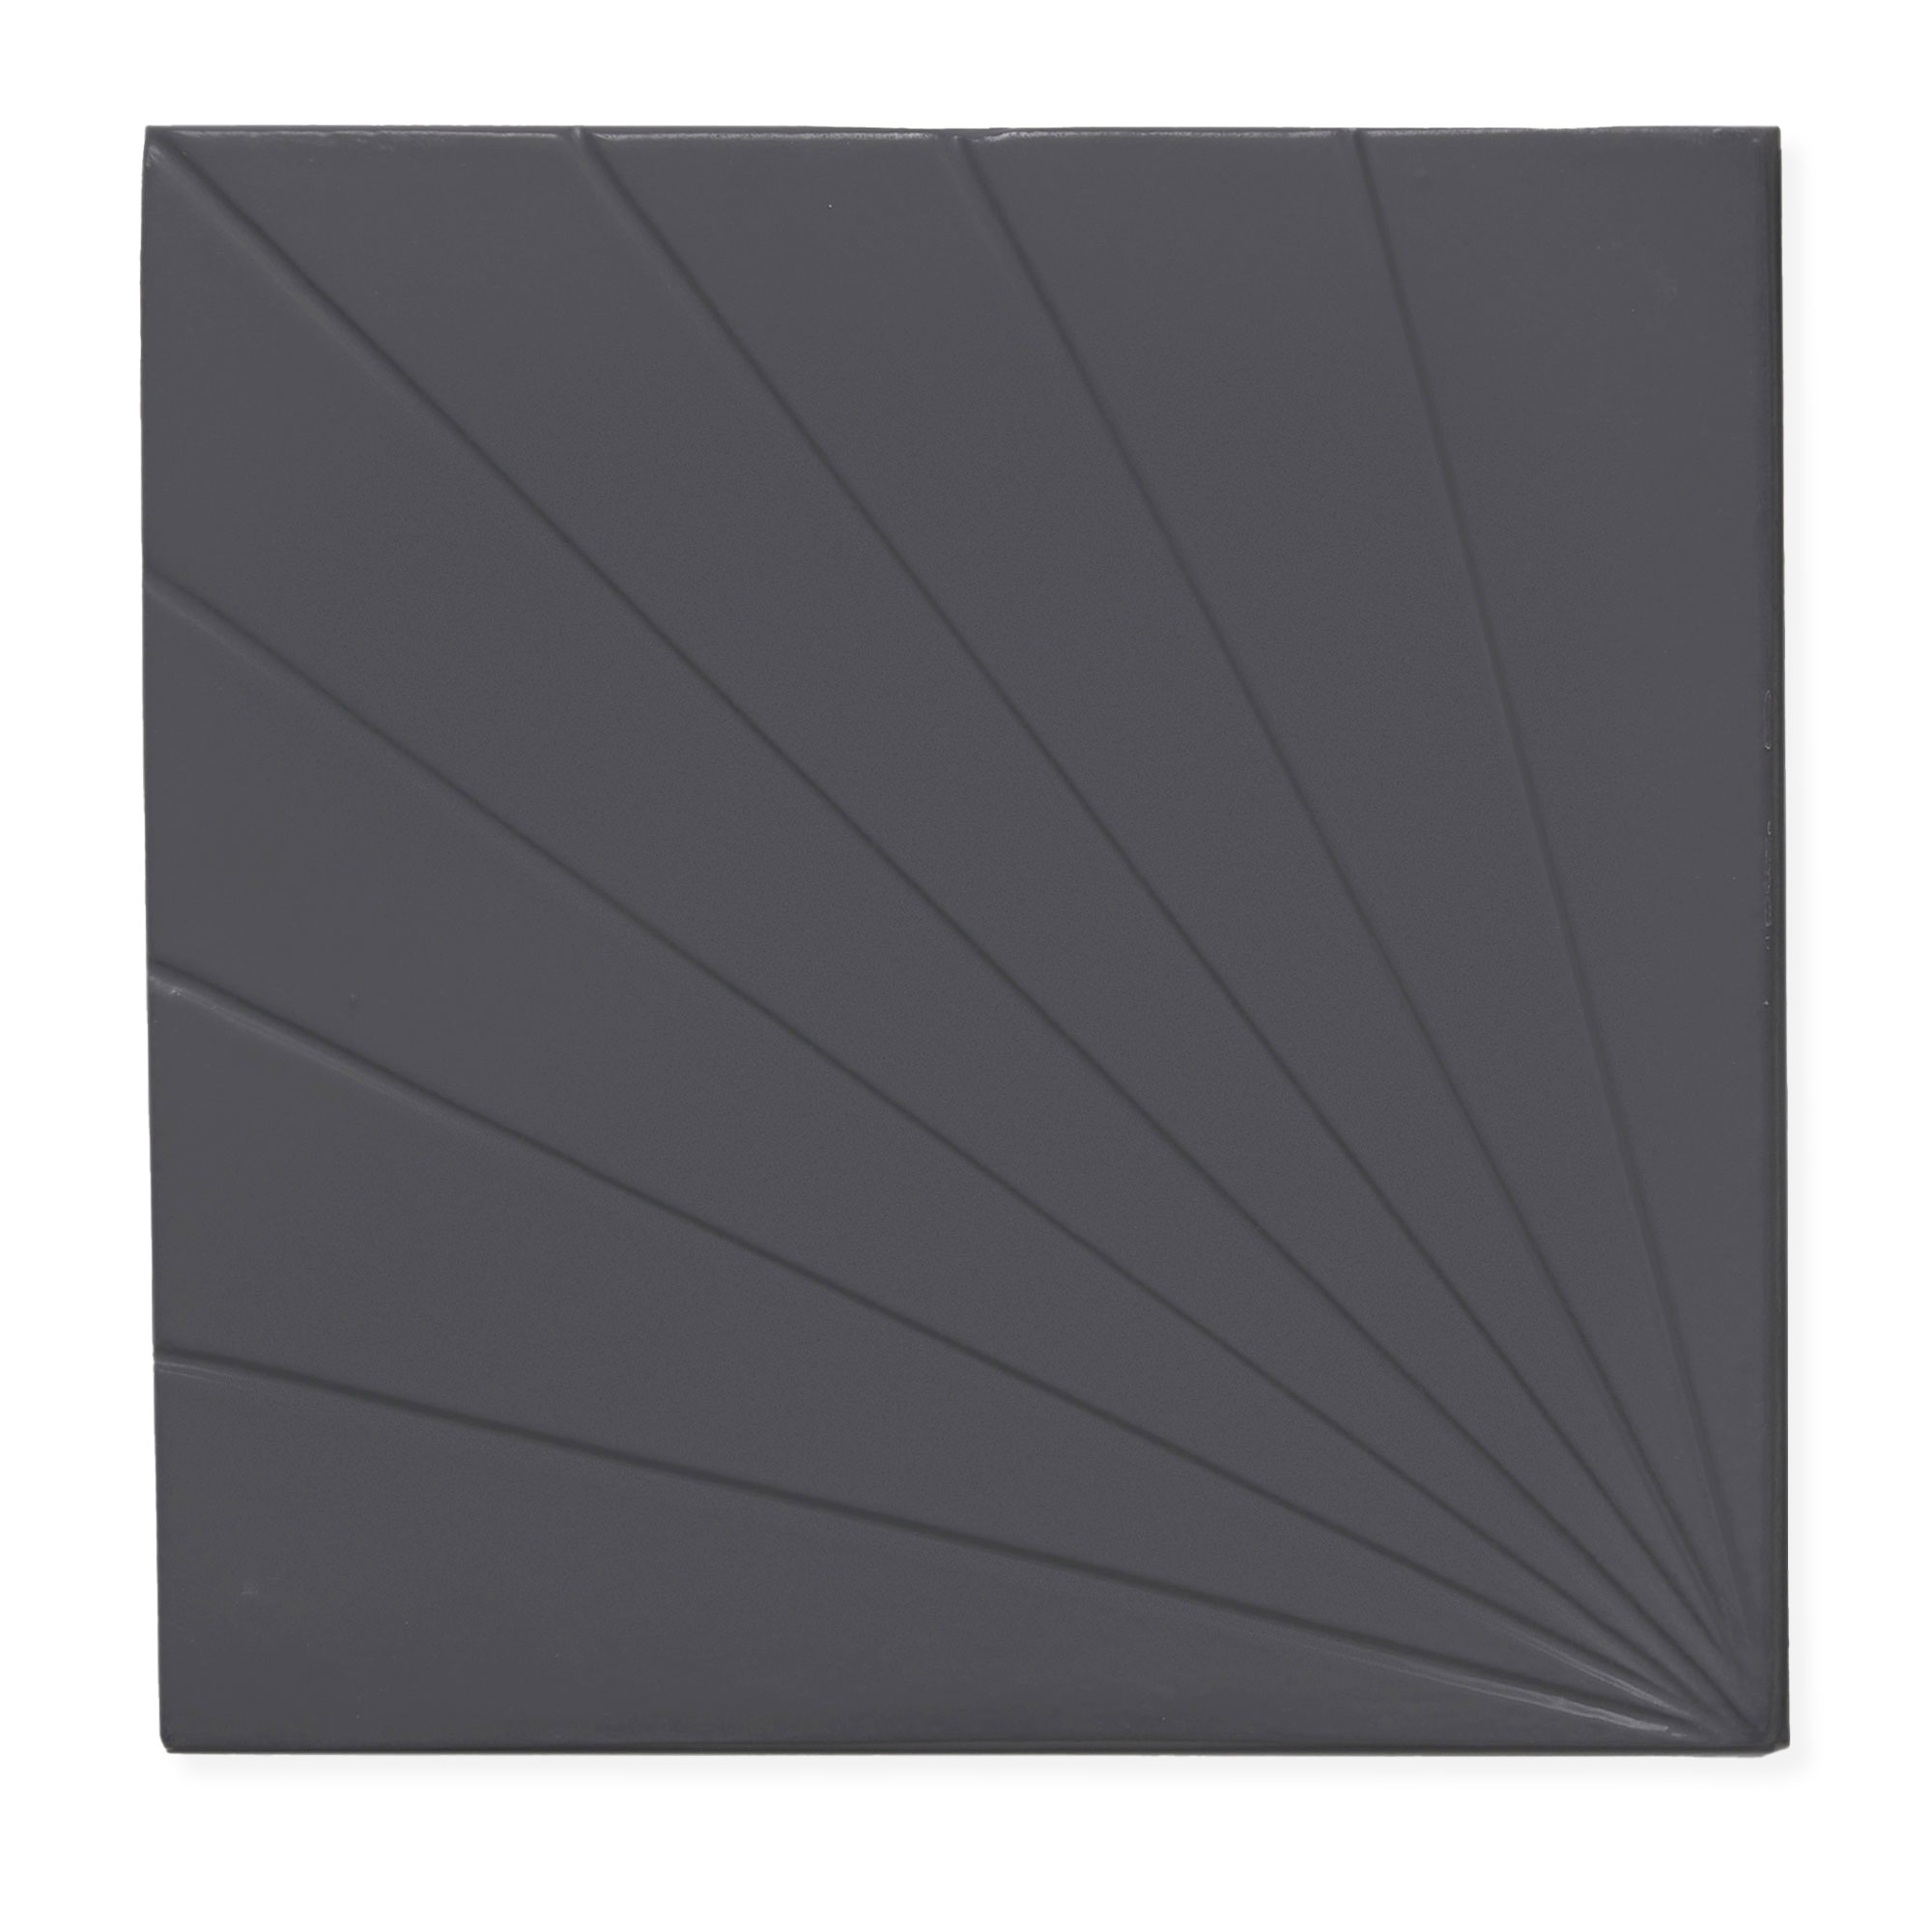 Tulum Black 6x6 - Dimensional Relief Artisan Ceramic Tile